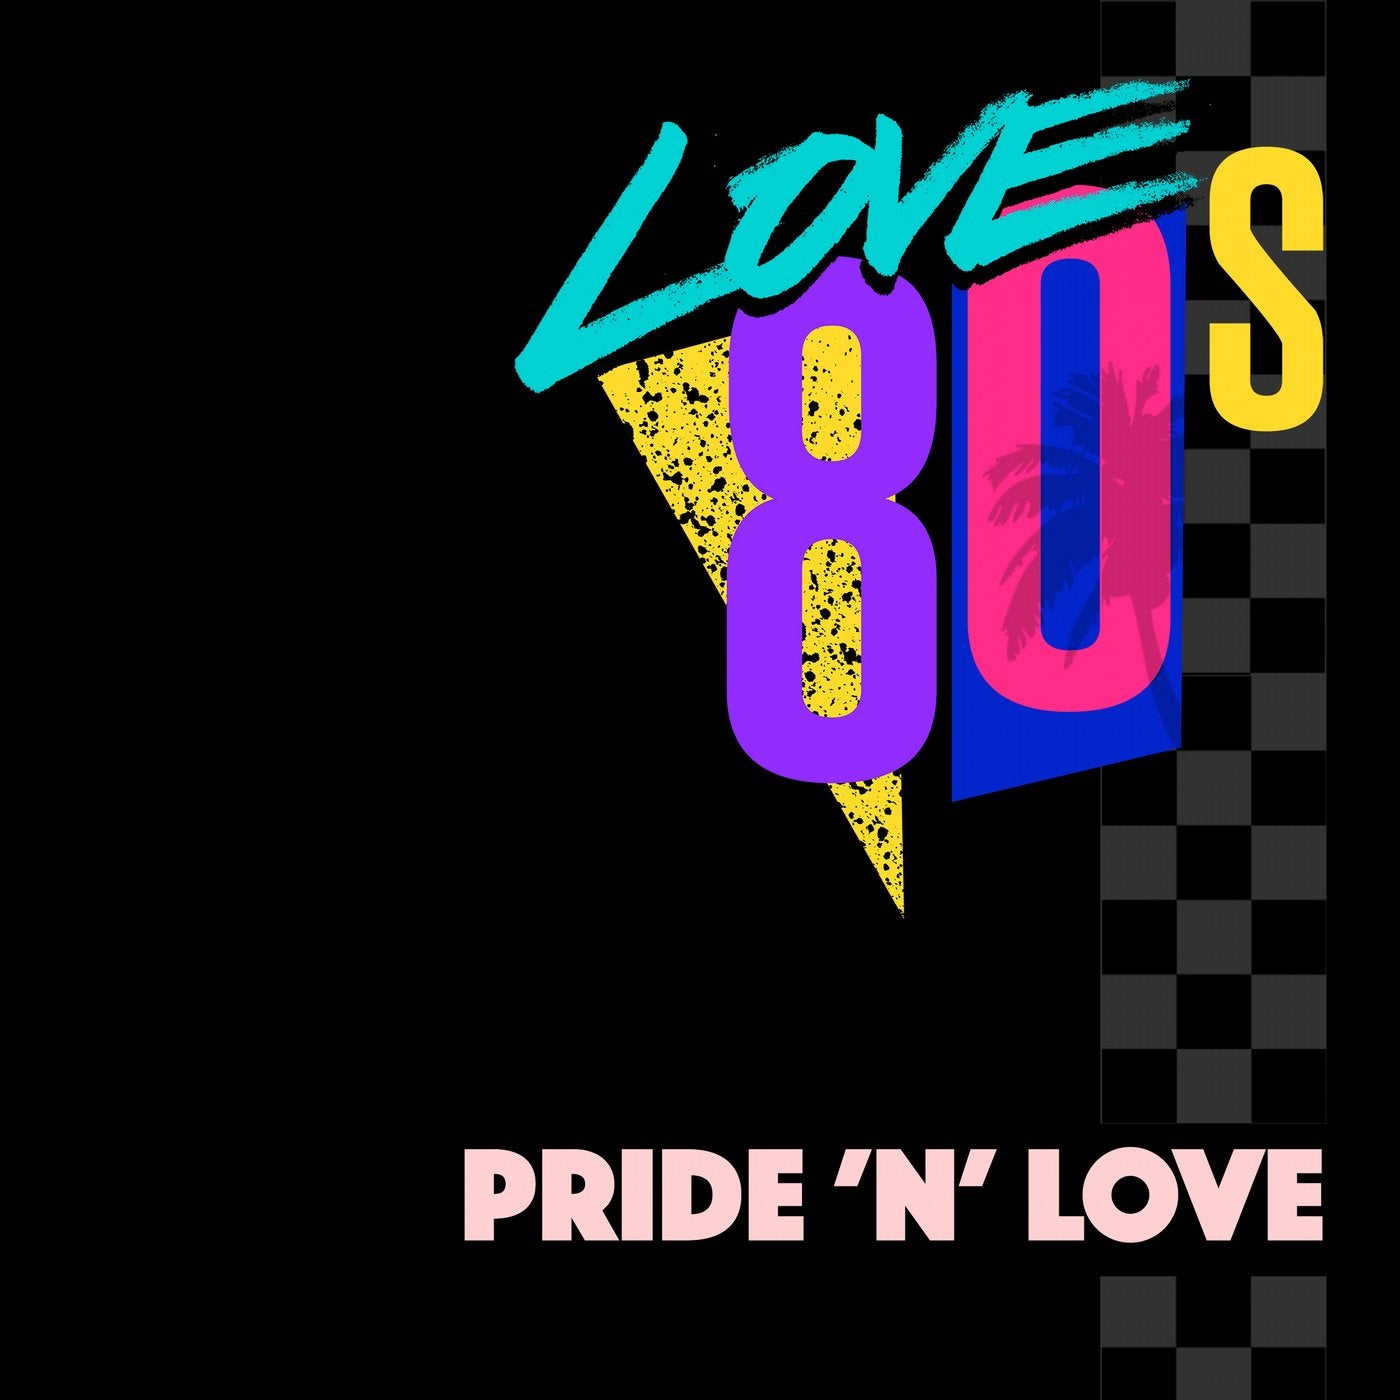 Pride 'N' Love